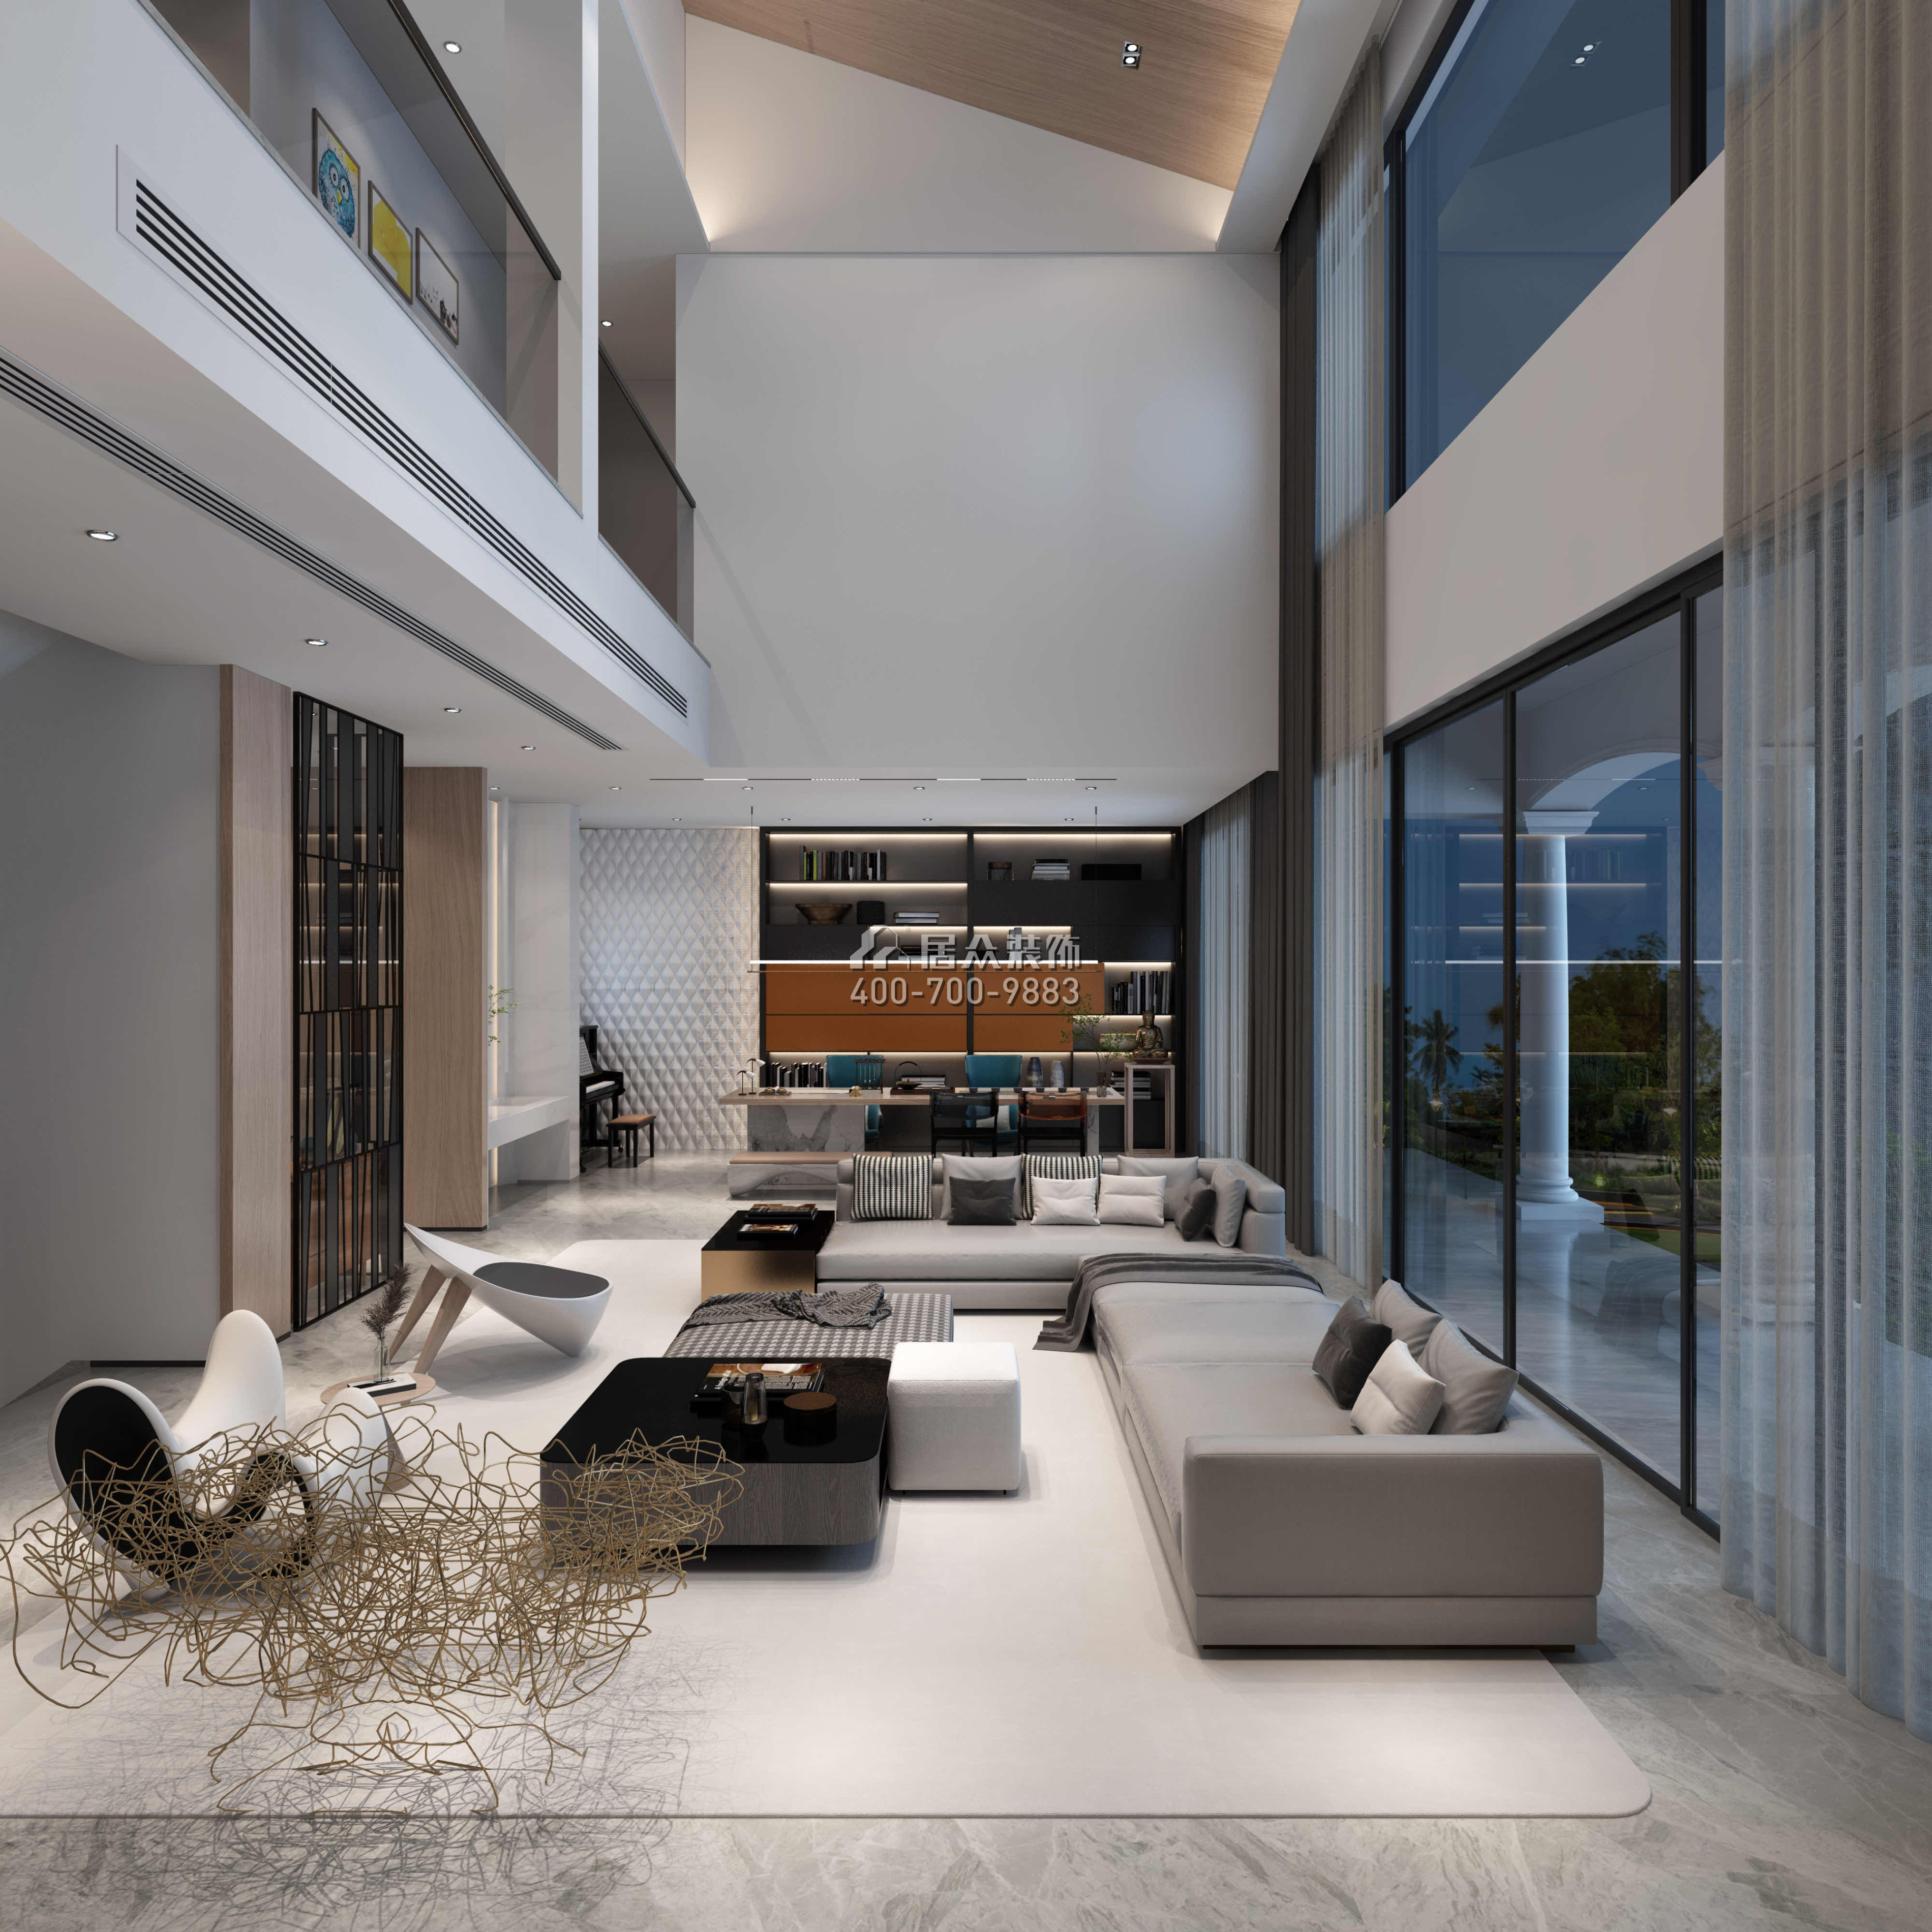 翠湖香山480平方米現代簡約風格別墅戶型客廳裝修效果圖